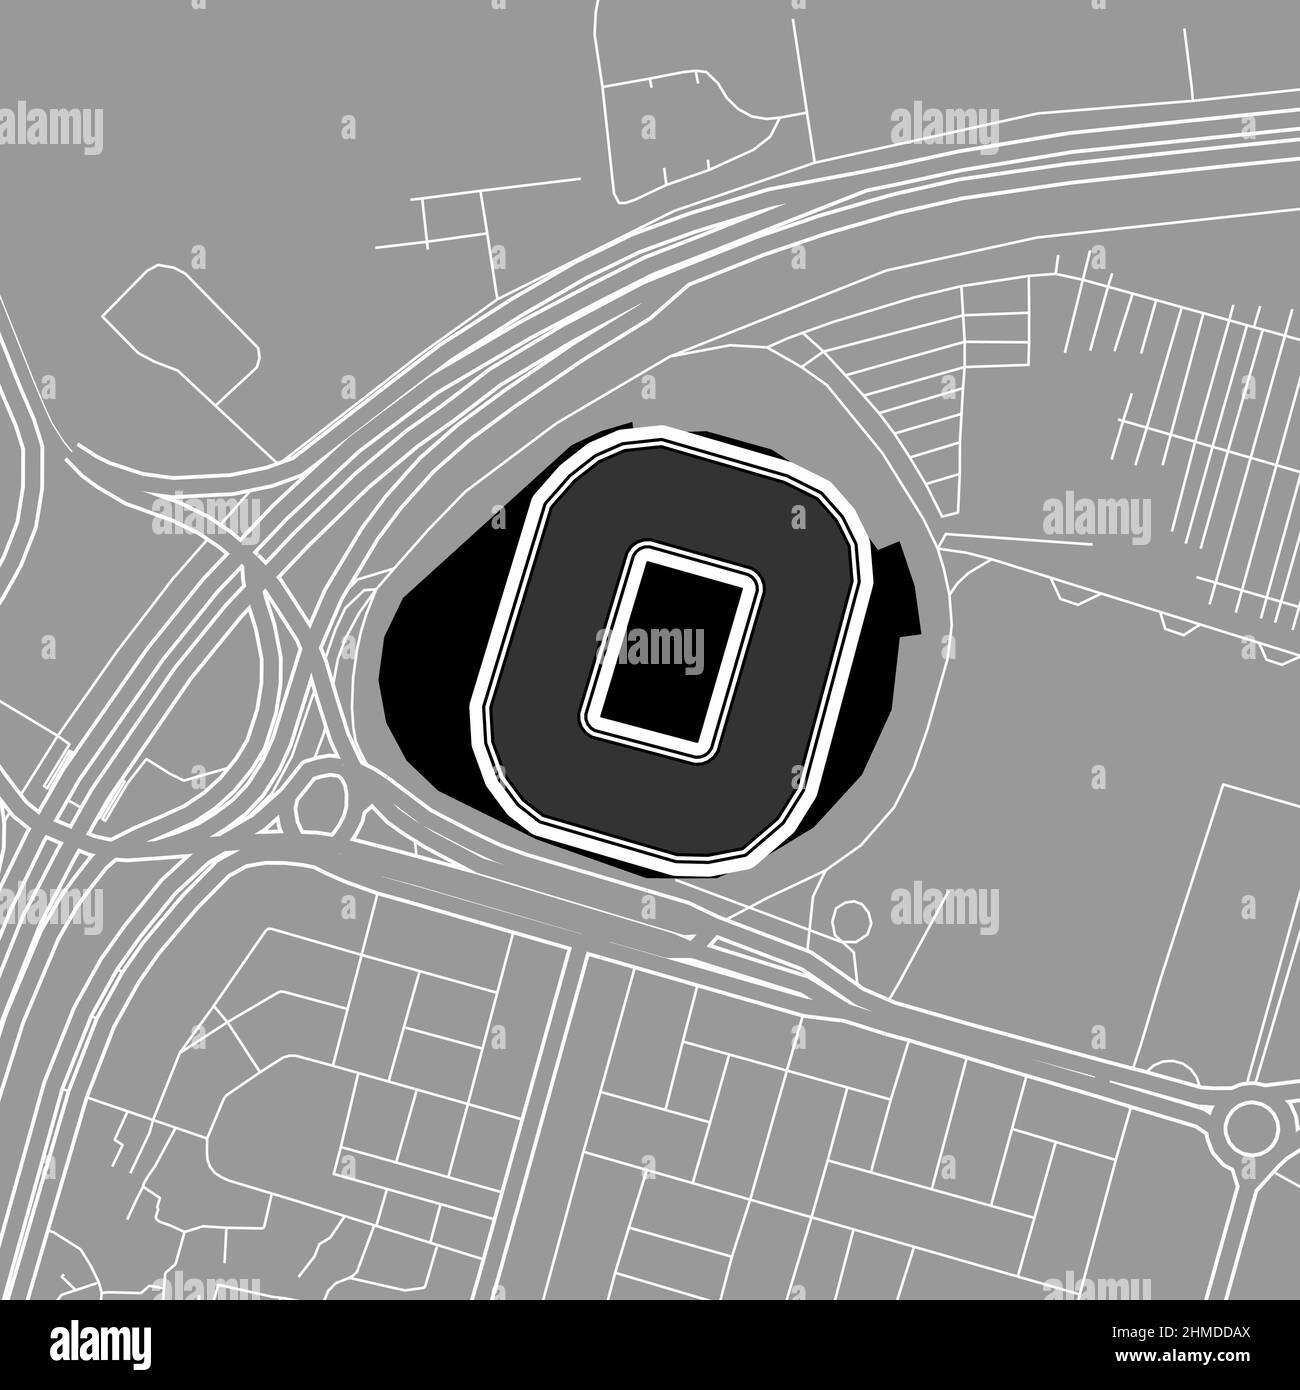 Porto-Eger, MLB-Baseballstadion, Vektorkarte. Die Baseballstatiumkarte wurde mit weißen Flächen und Linien für Hauptstraßen, Nebenstraßen, gezeichnet. Stock Vektor